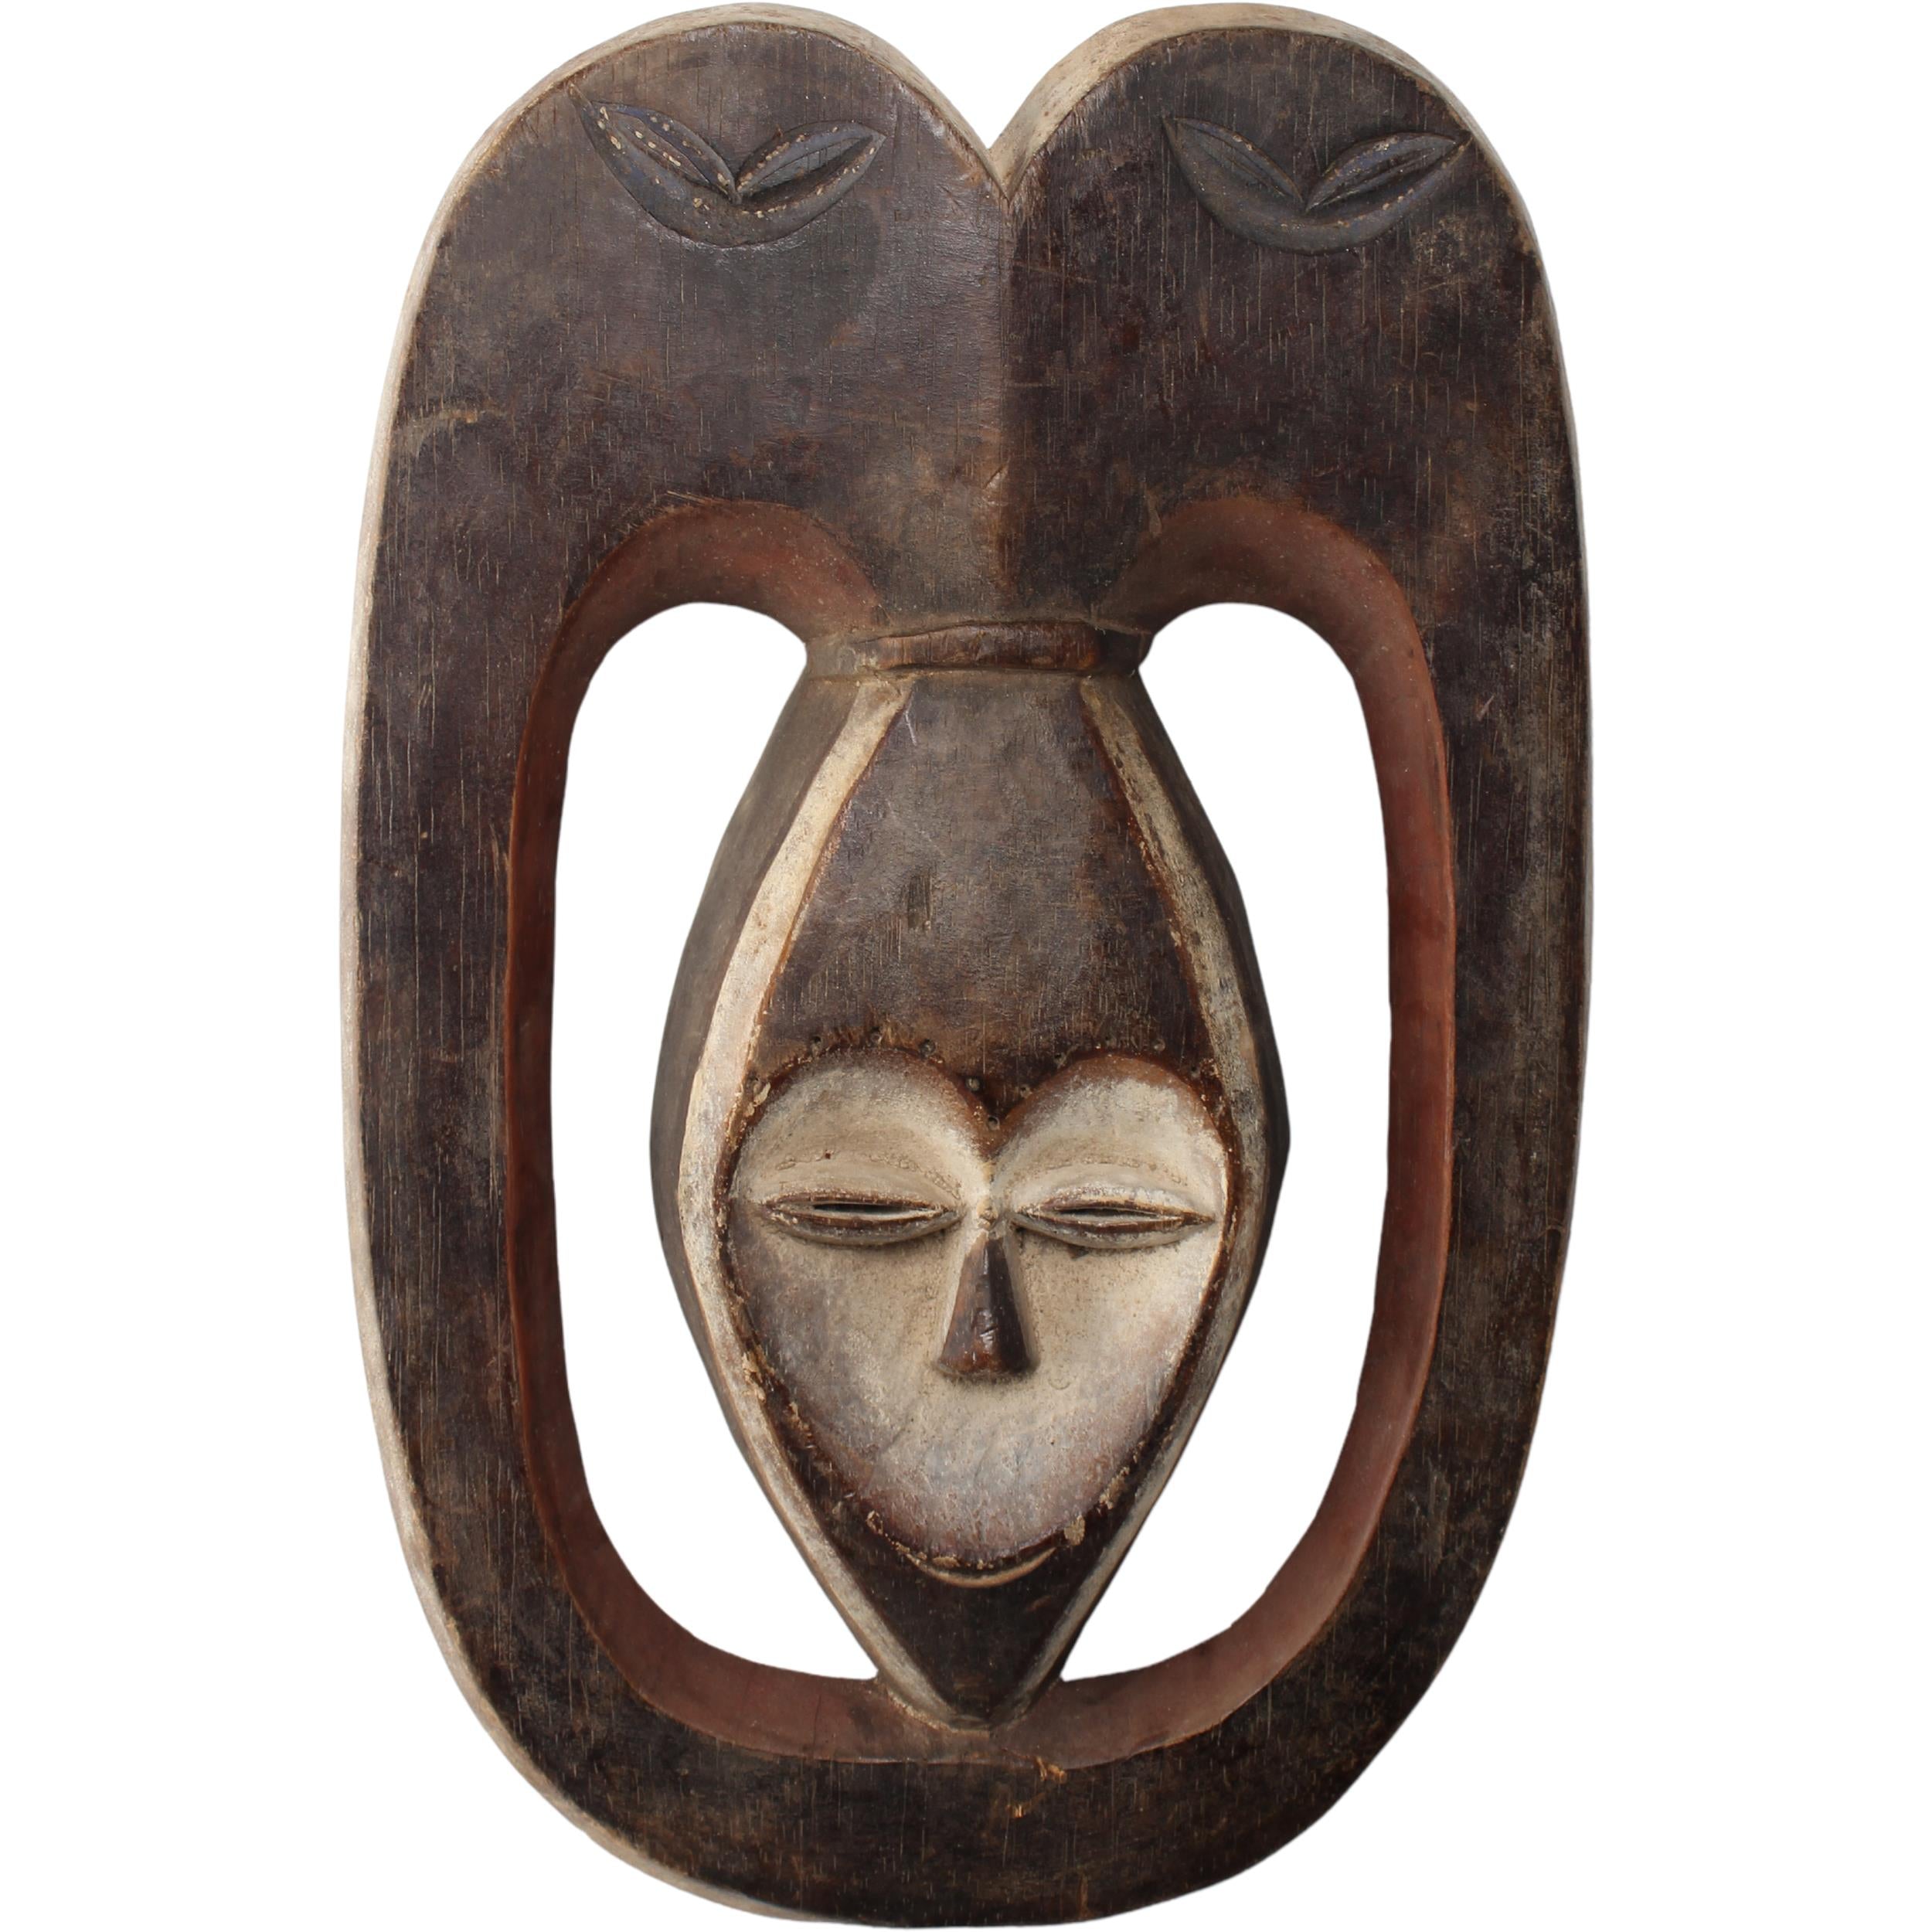 Kwele Tribe Mask ~16.9" Tall - Mask